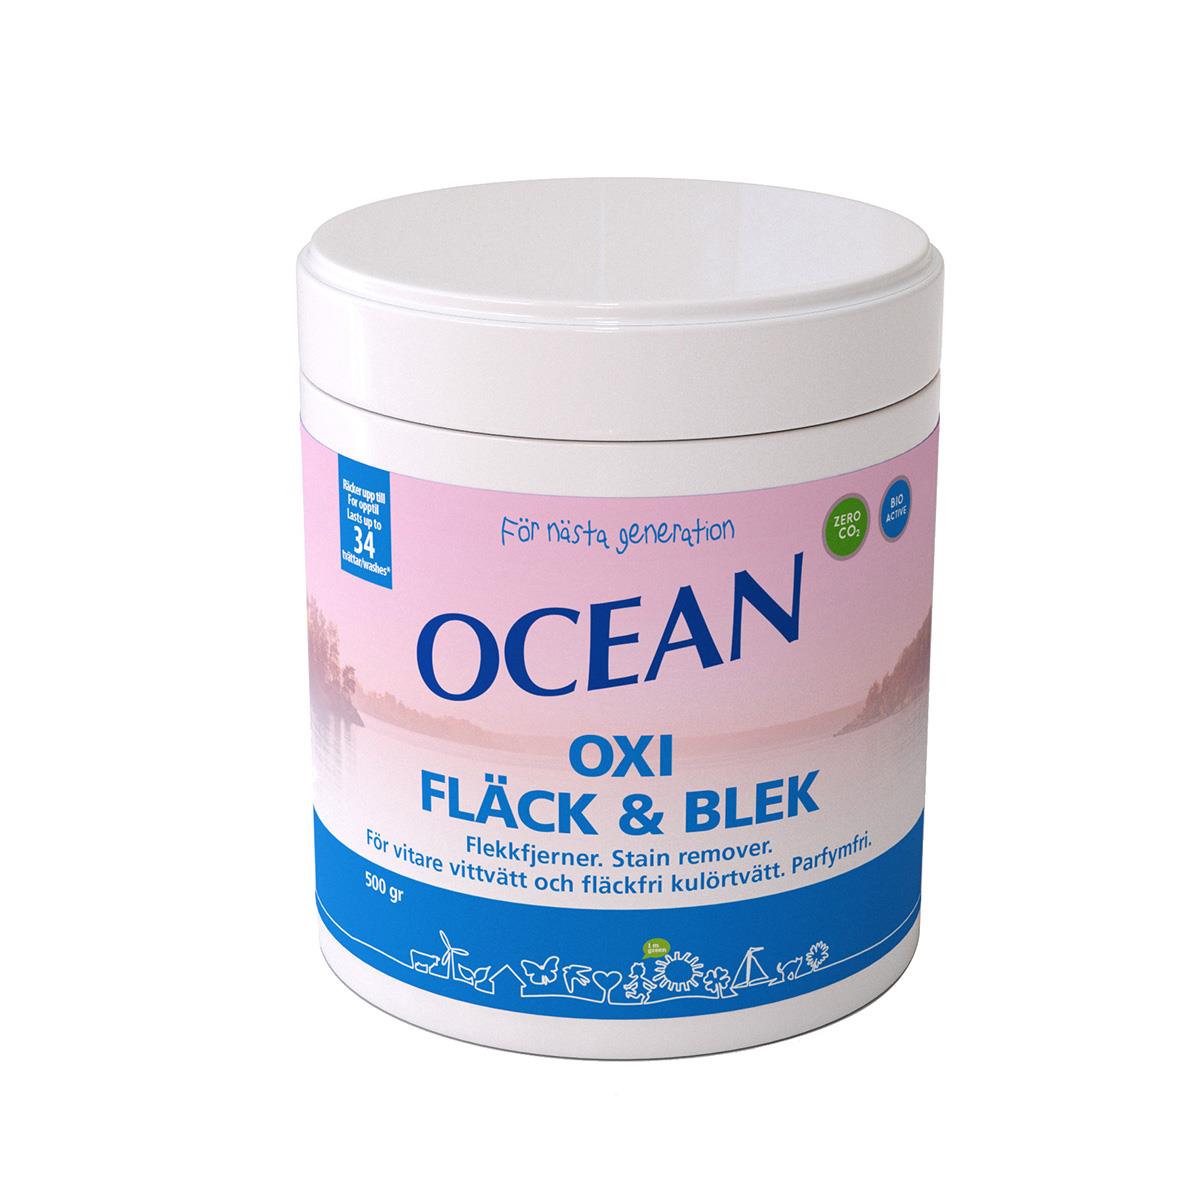 Fläckborttagare Ocean Oxi Fläck & Blek 500g